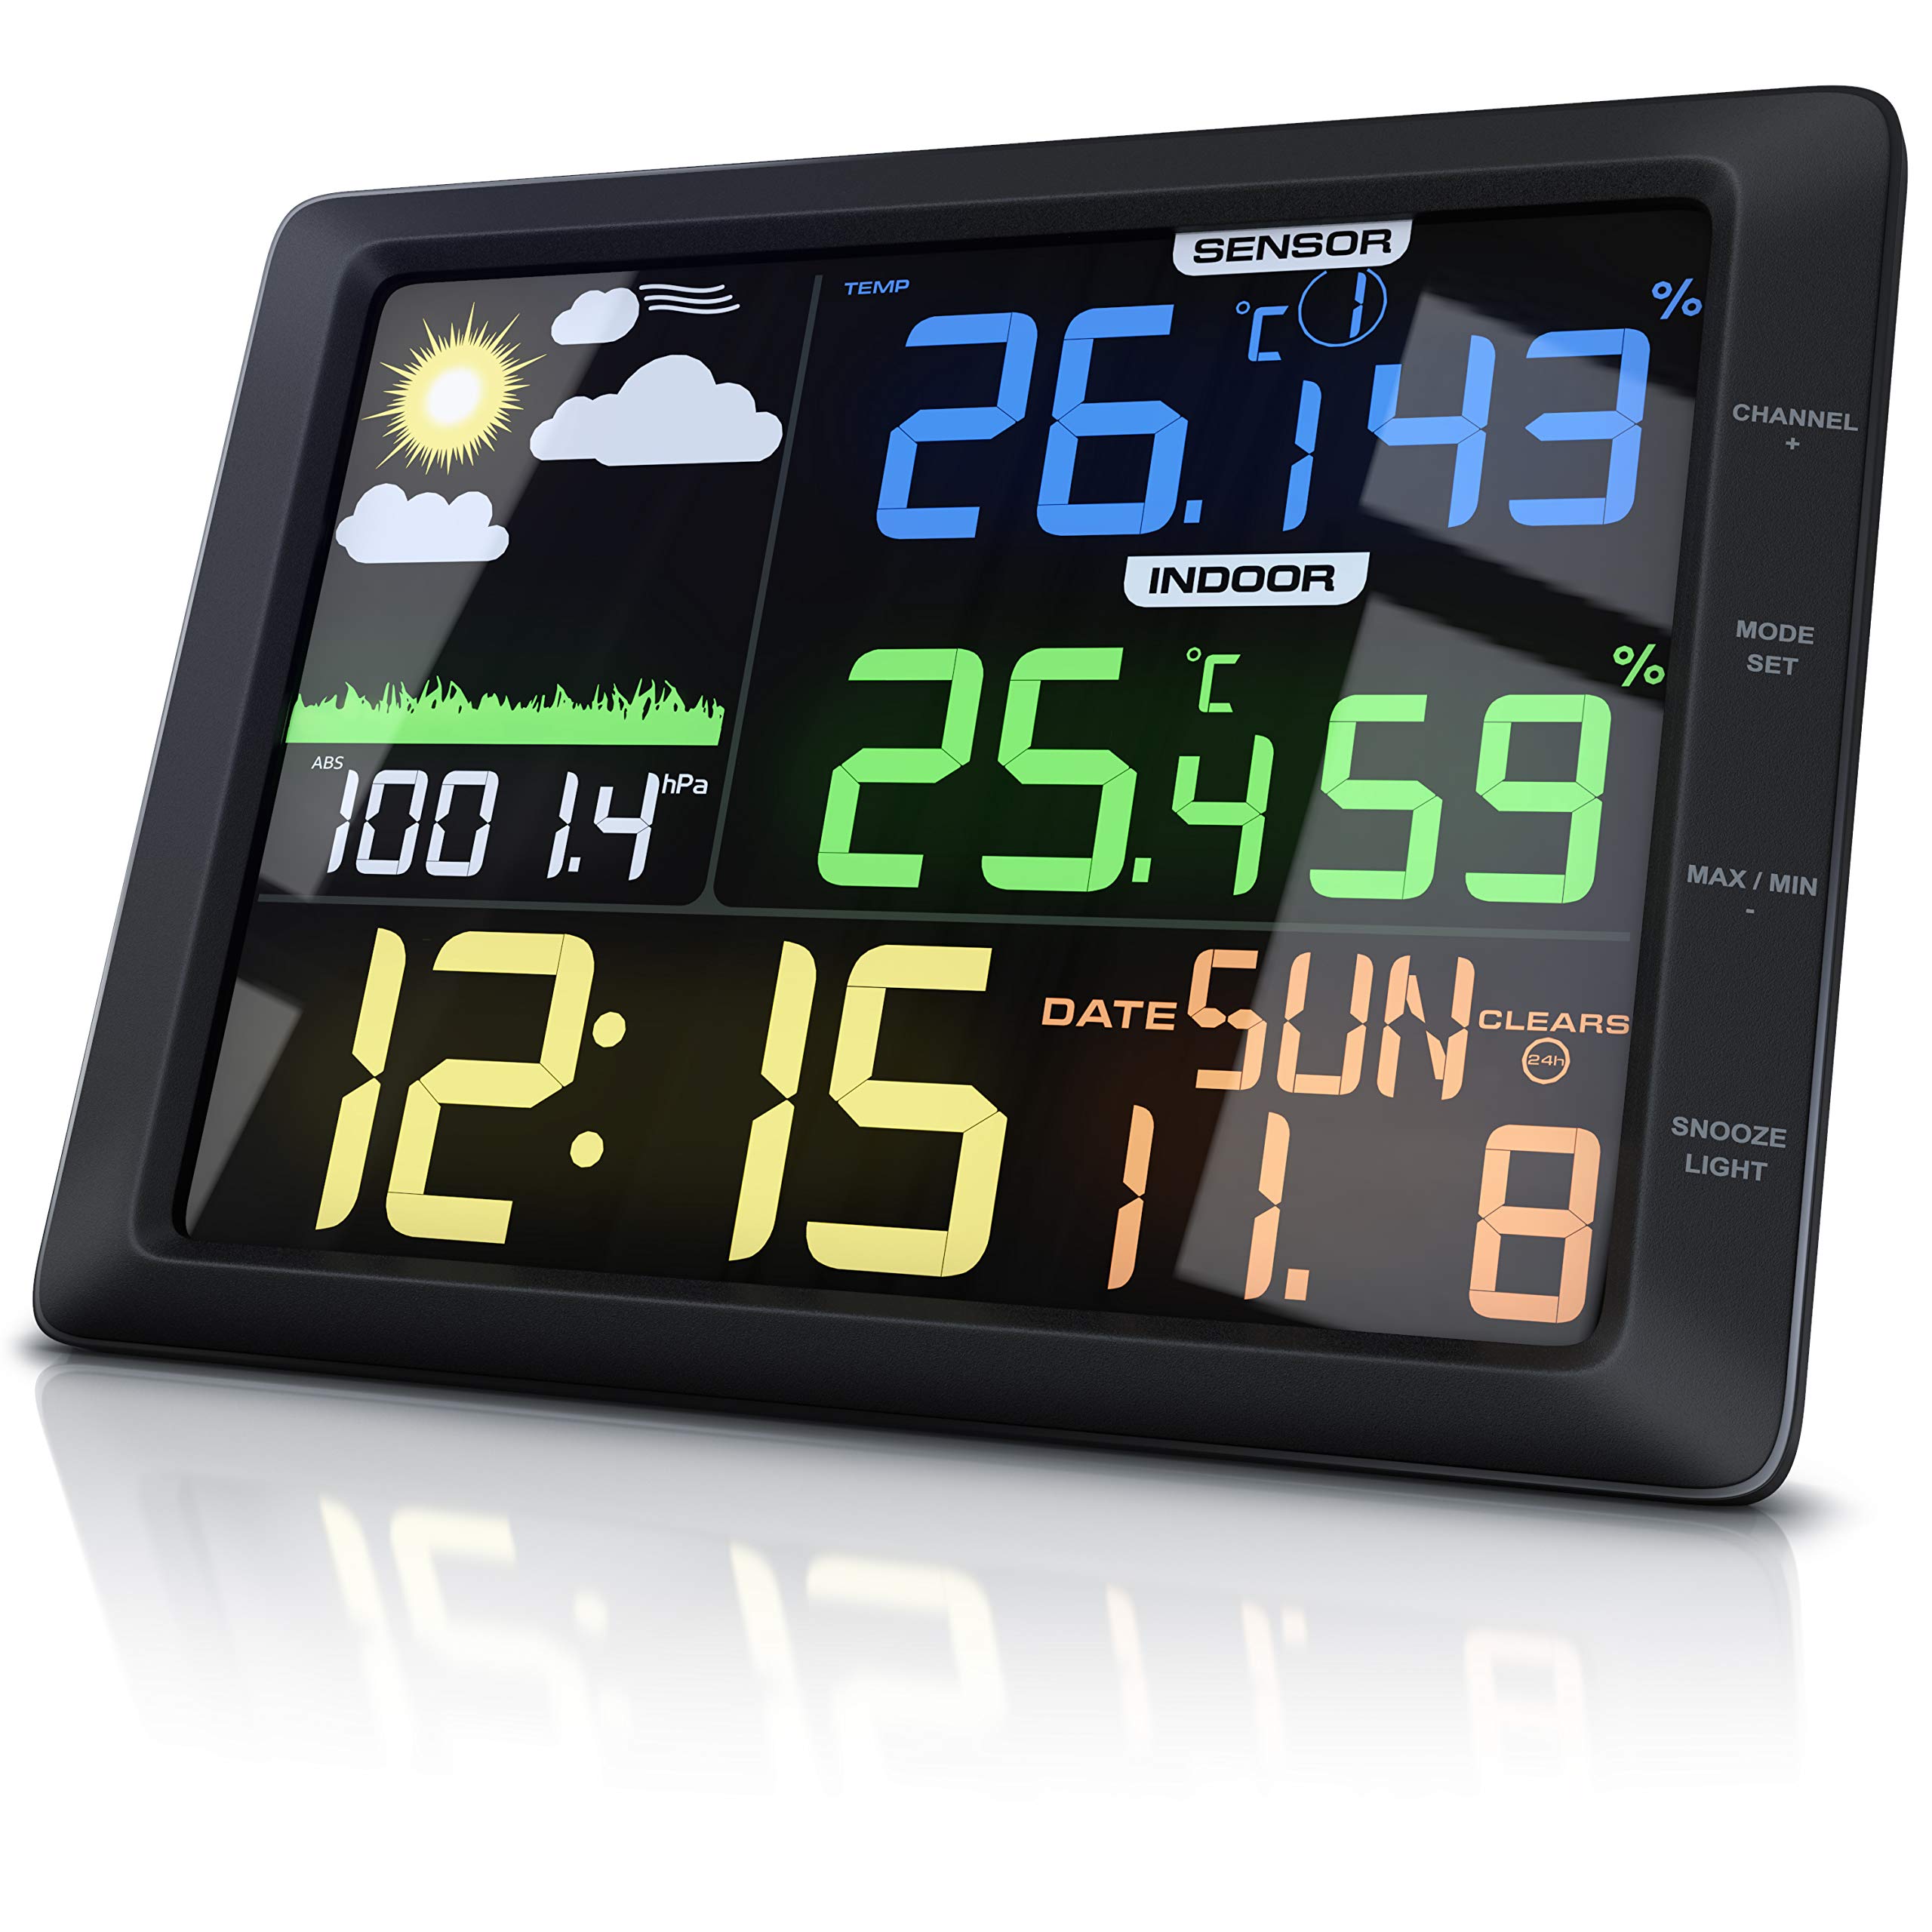 CSL - Wetterstation mit Farbdisplay und Außensensor, 20 cm LCD Farbdisplay - Luftdruck Barometer Temperatur Wettervorhersage Frostalarm Datum Uhrzeit - Wecker mit Schlummerfunktion